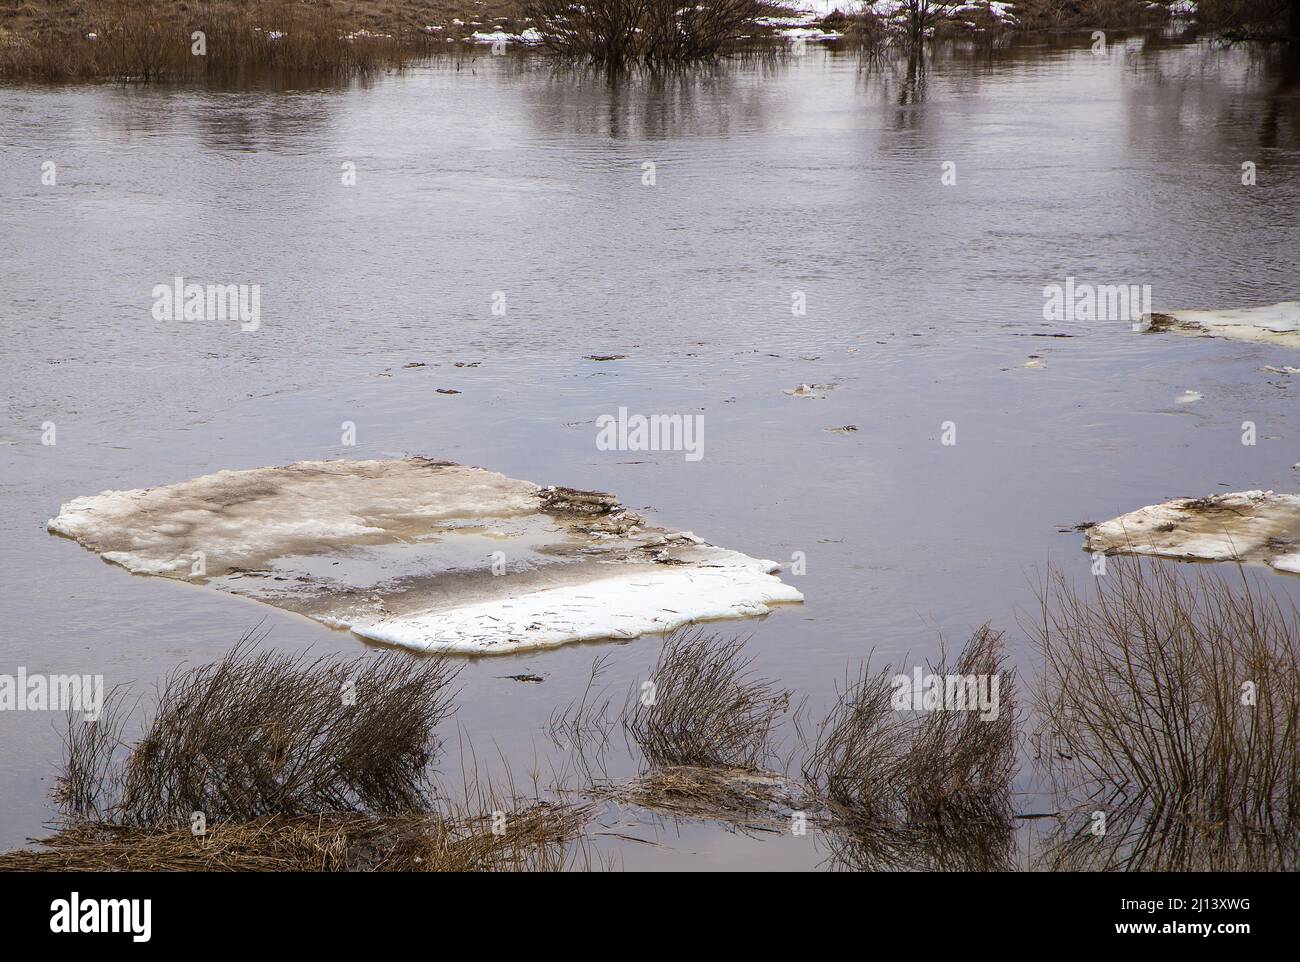 Nahaufnahme von schmutzigen Eisschollen schweben auf dem Fluss. Frühling, Schnee schmilzt, trockenes Gras rundherum, Überschwemmungen beginnen und der Fluss überfließt. Tag, bewölktes Wetter, weiches warmes Licht. Stockfoto